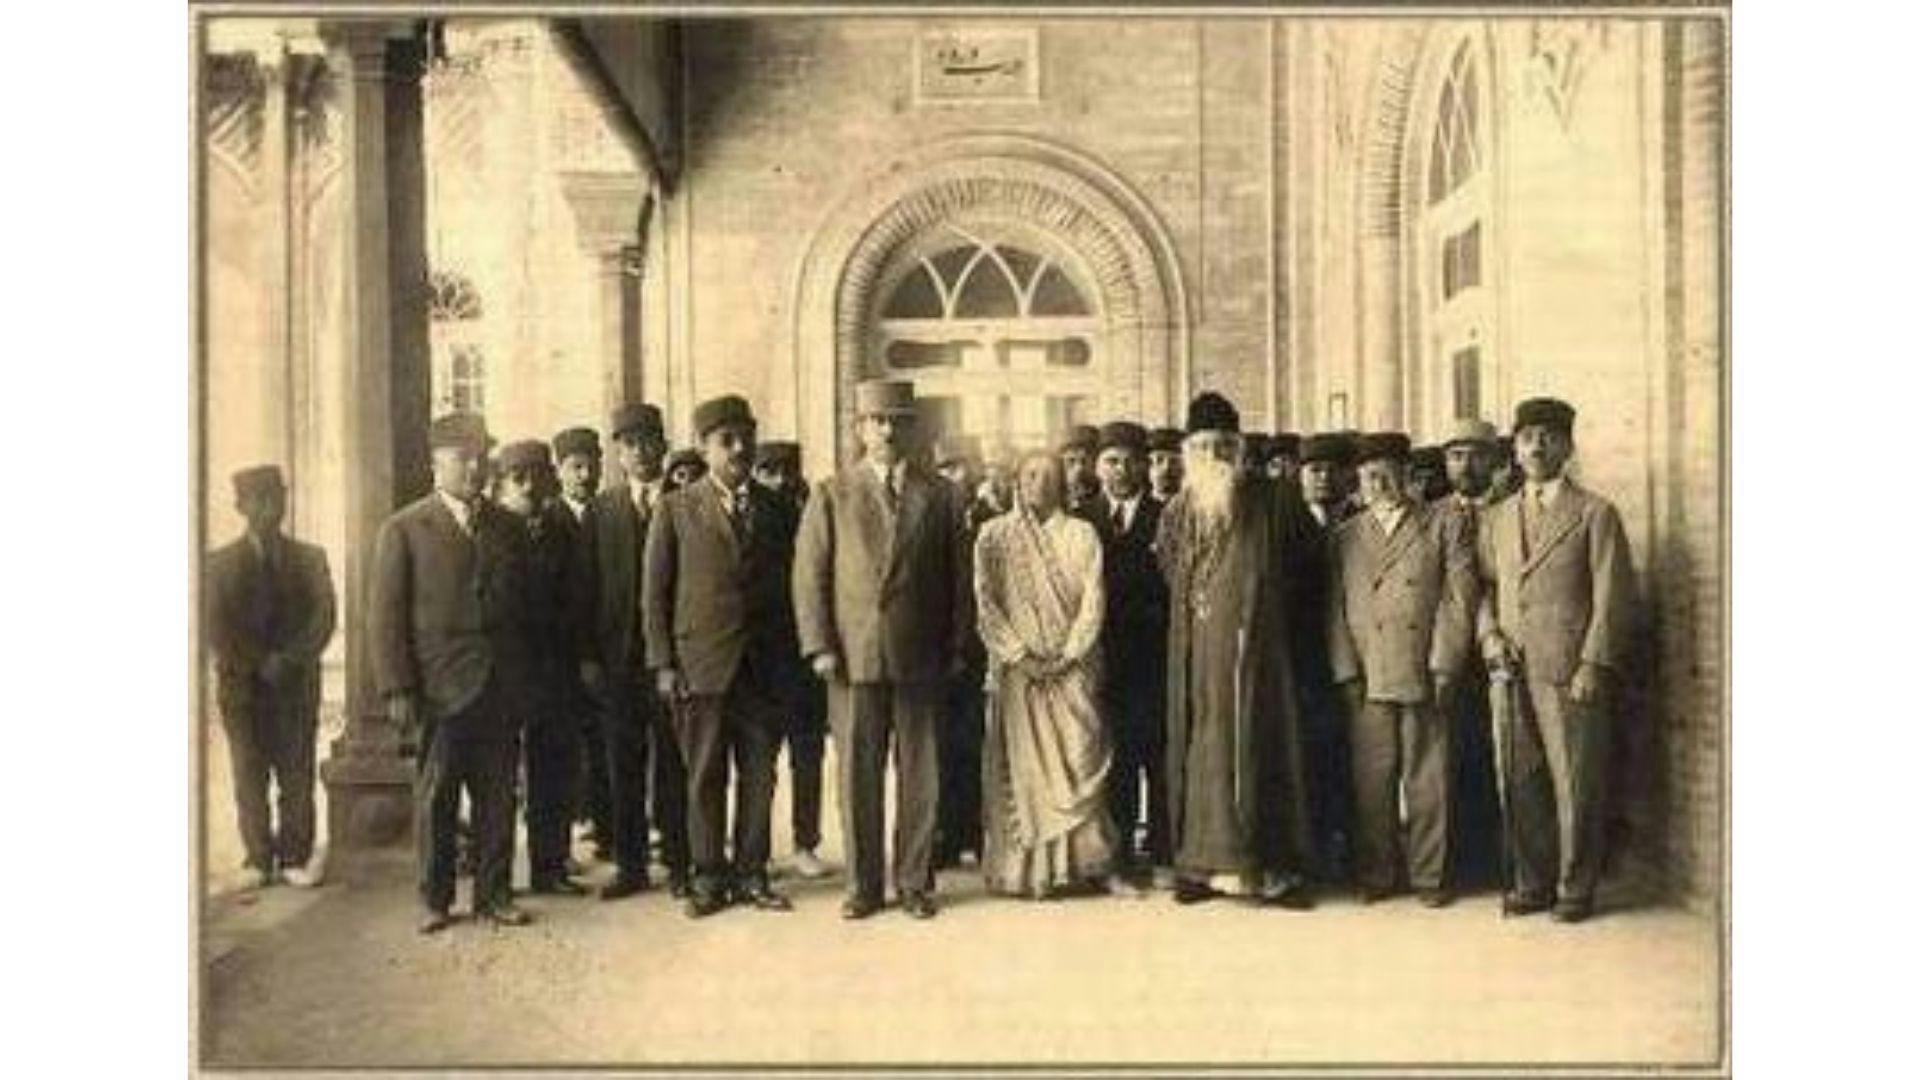 Rabindranath Tagore meets members of Iran's parliament (1932)